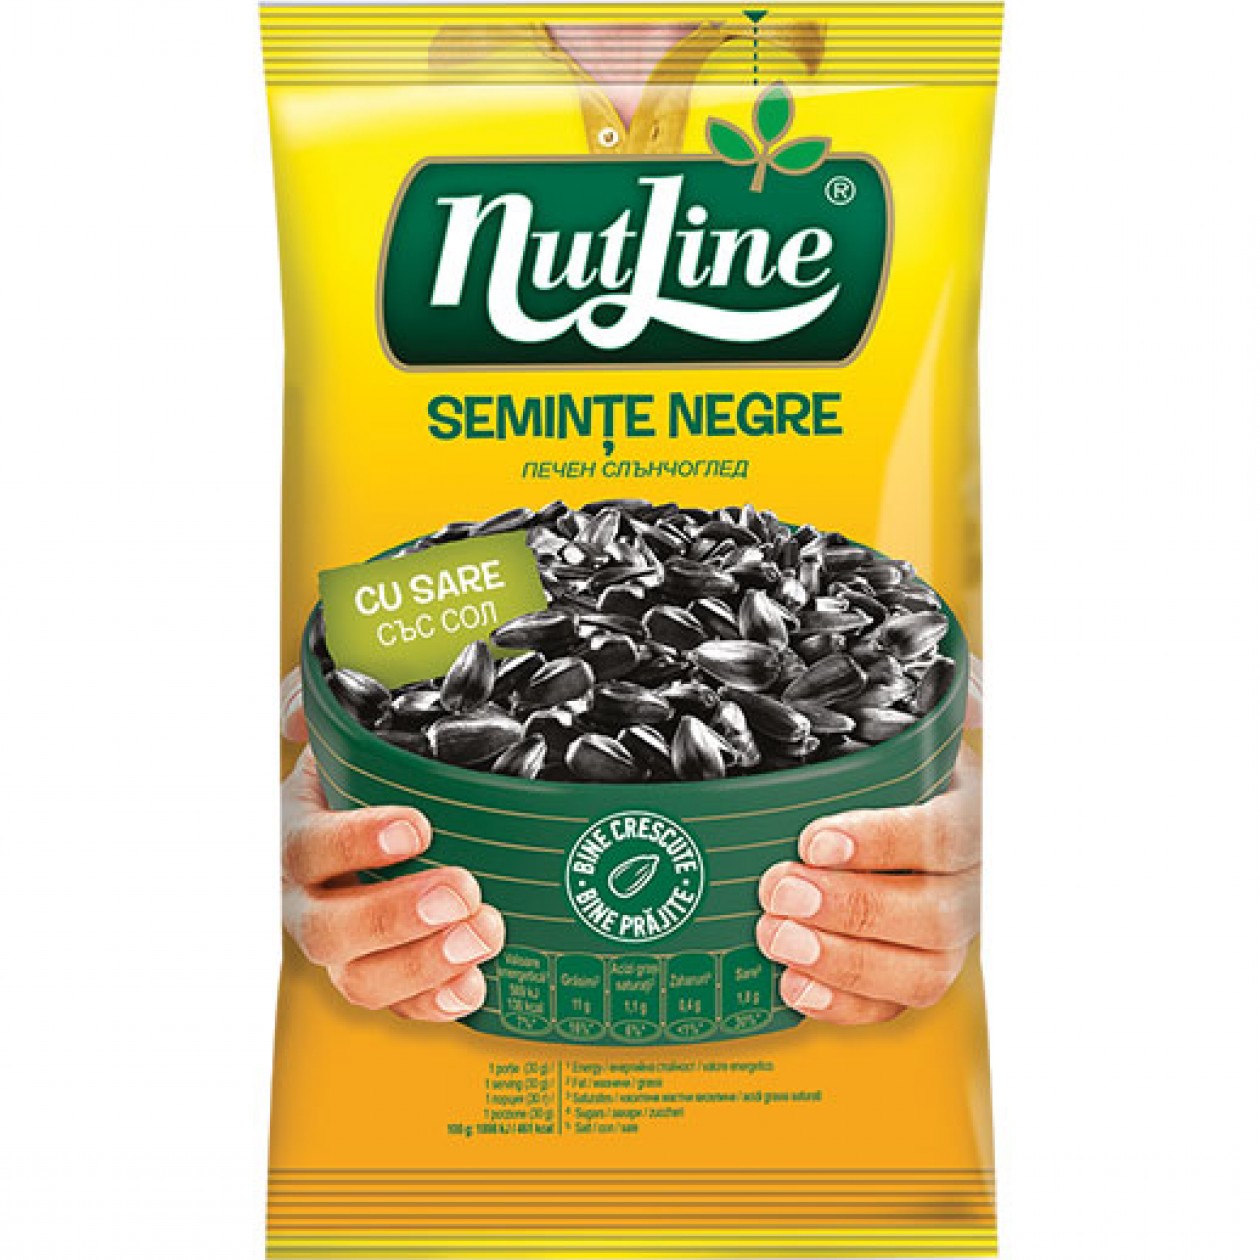 Nutline Sunflower Seeds Black R&S (Seminte Negre) 12 x 100g